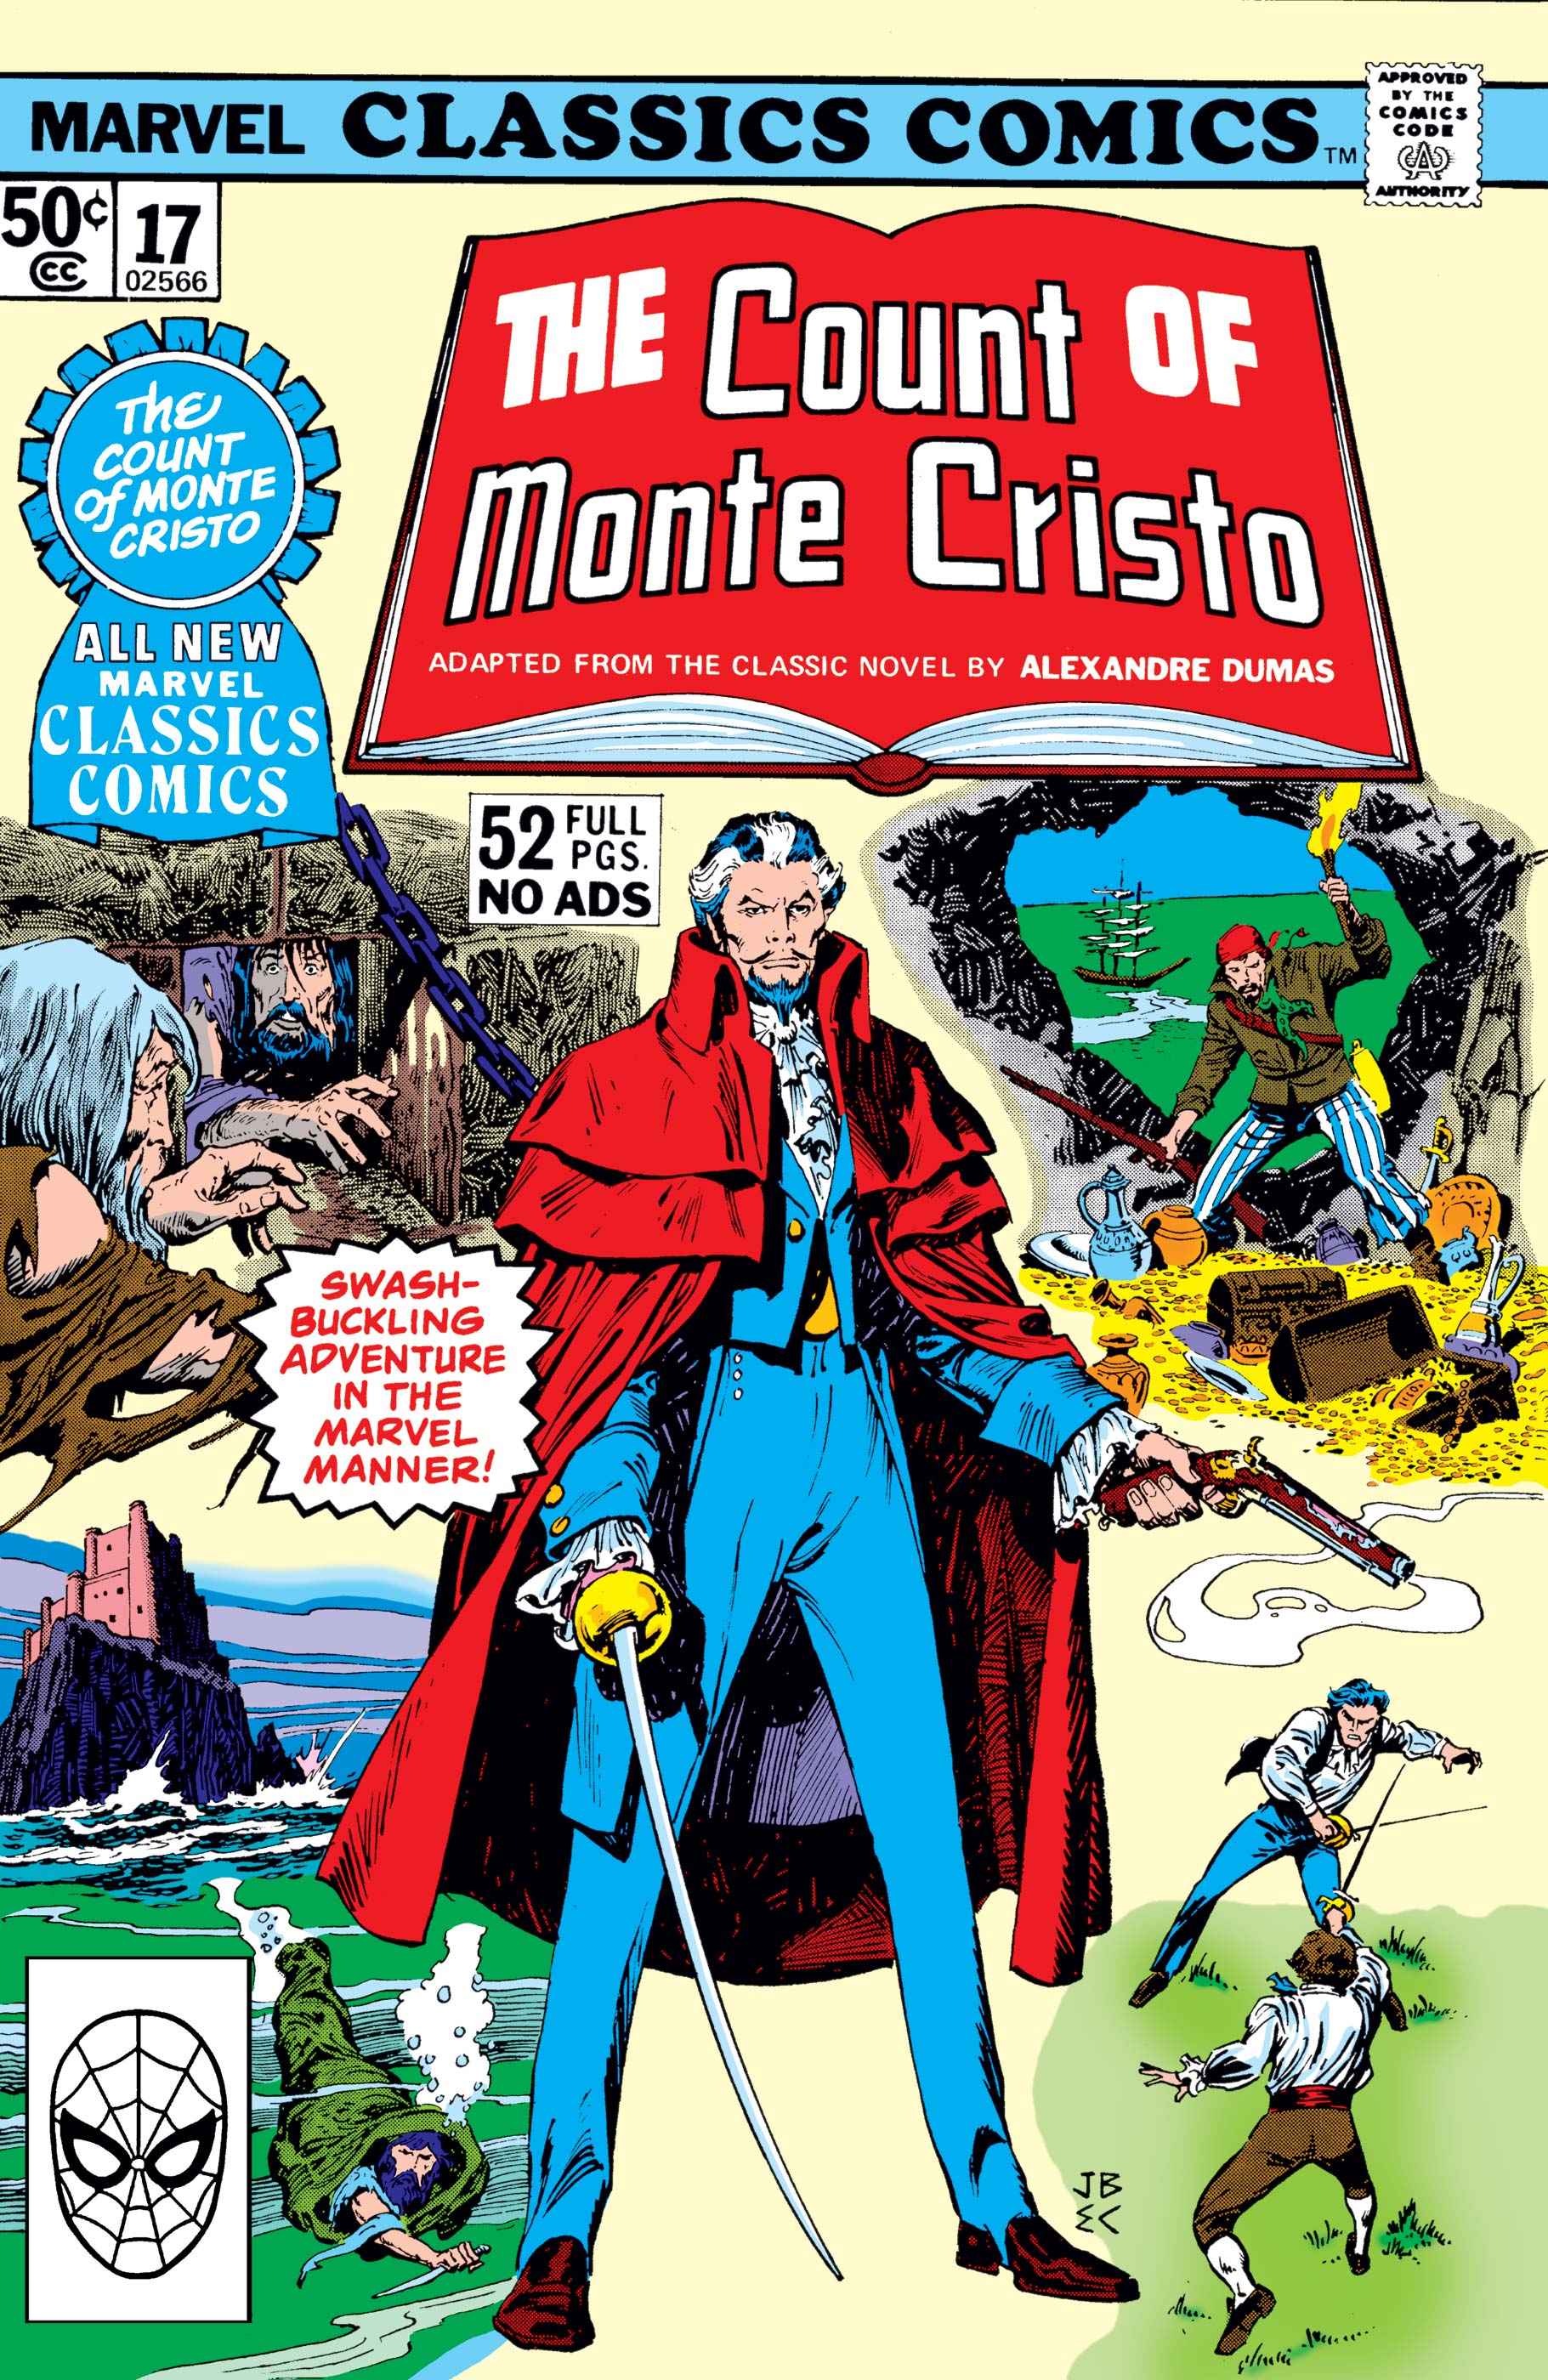 Marvel Classics Comics Series Featuring (1976) #17